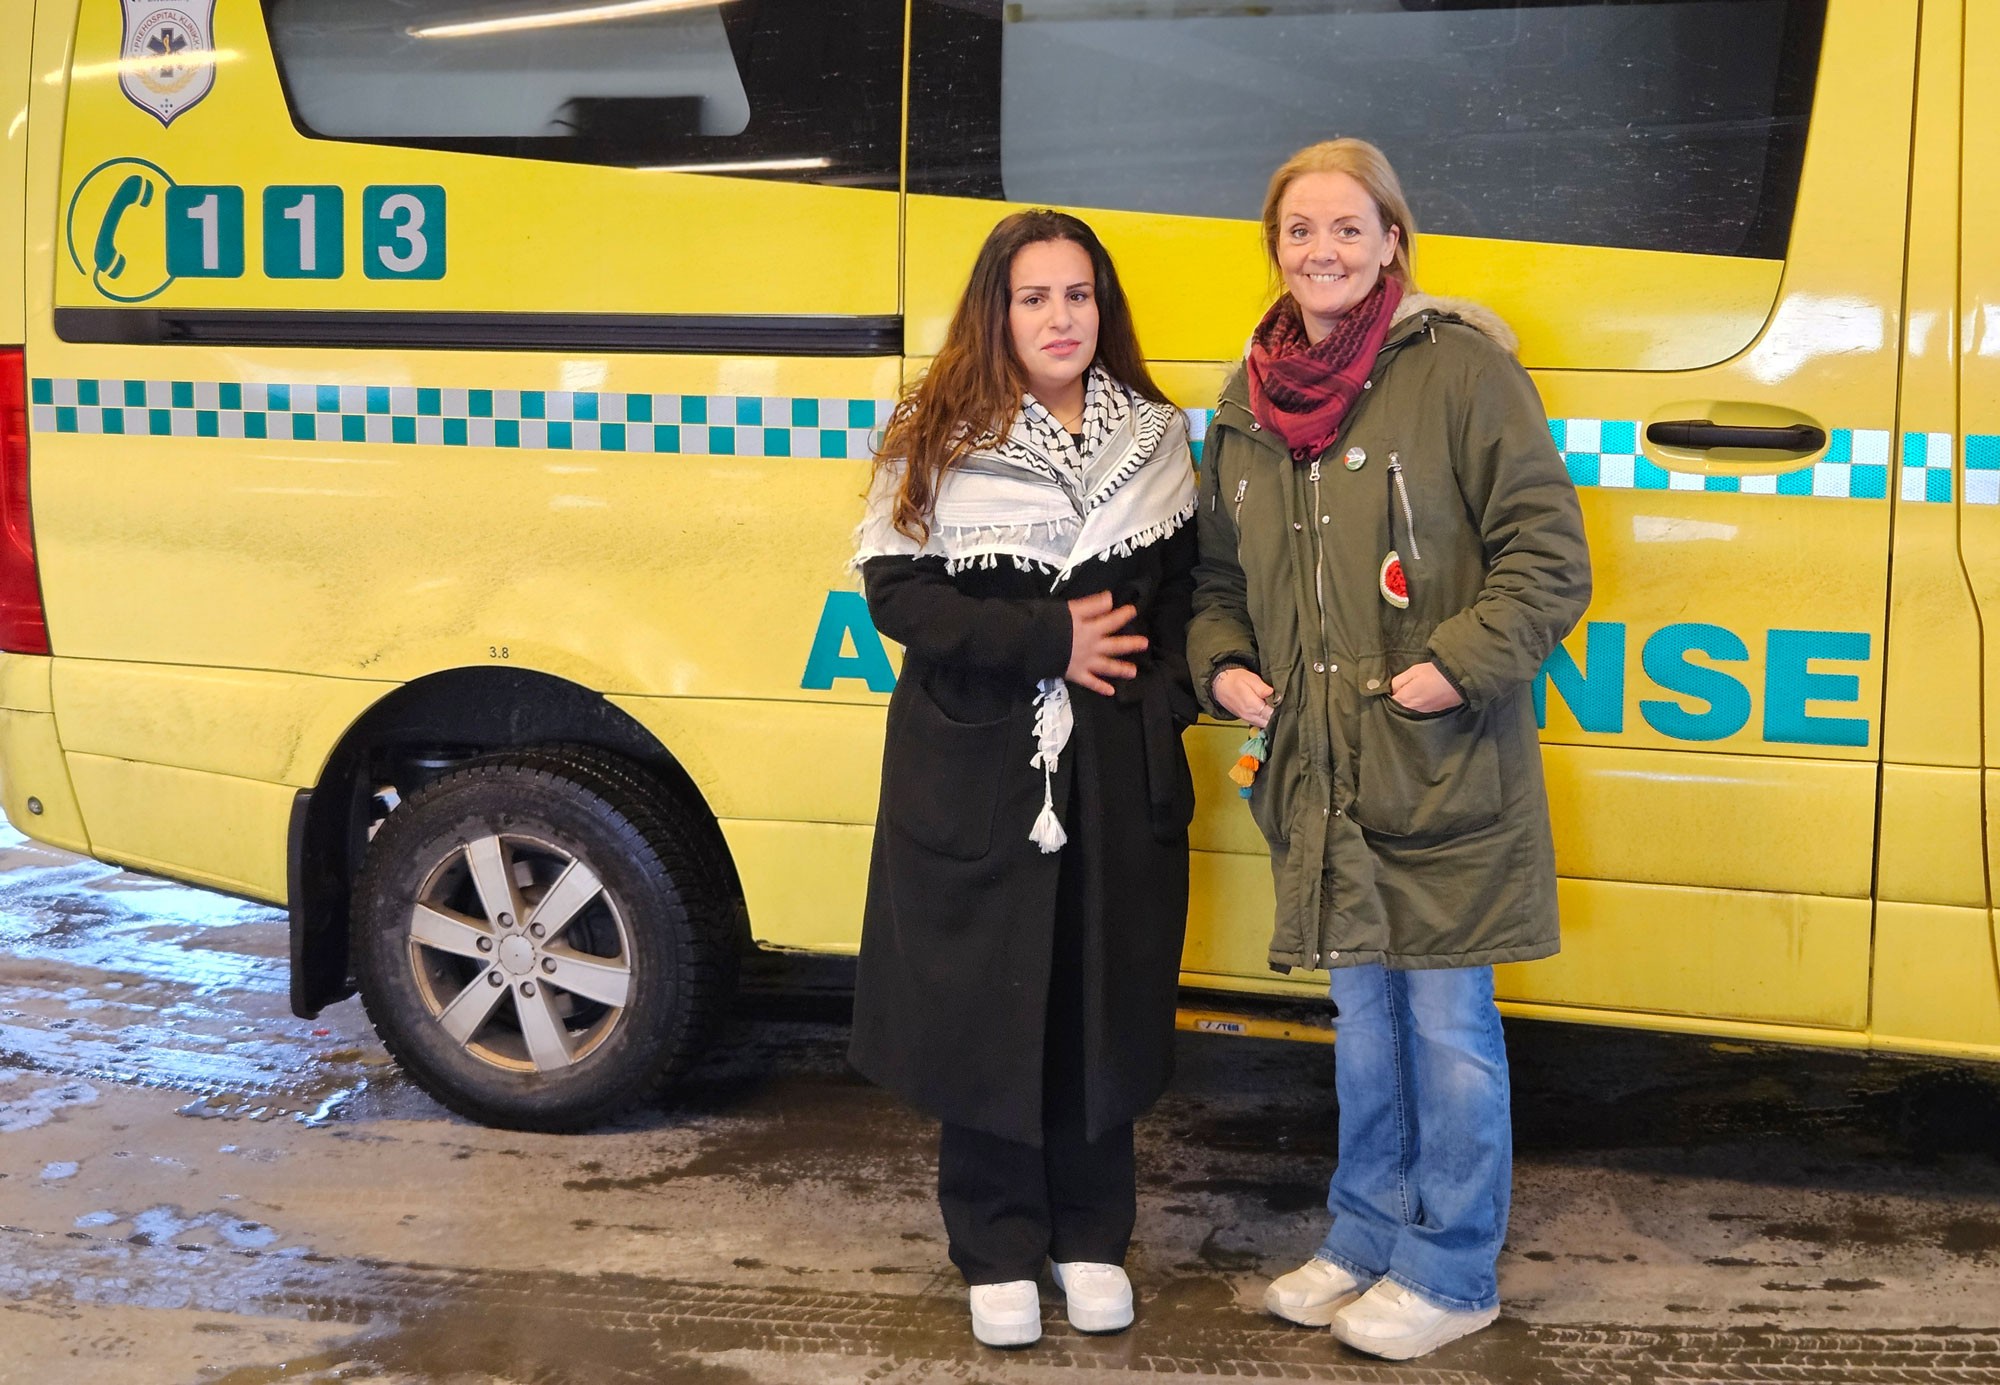 Helle Marie Åsatun og Sanaria Ali håper å få donert en ambulanse til Gaza. Maria C. Fælla er også med, men var ikke med da bildet ble tatt. Foto: Privat.